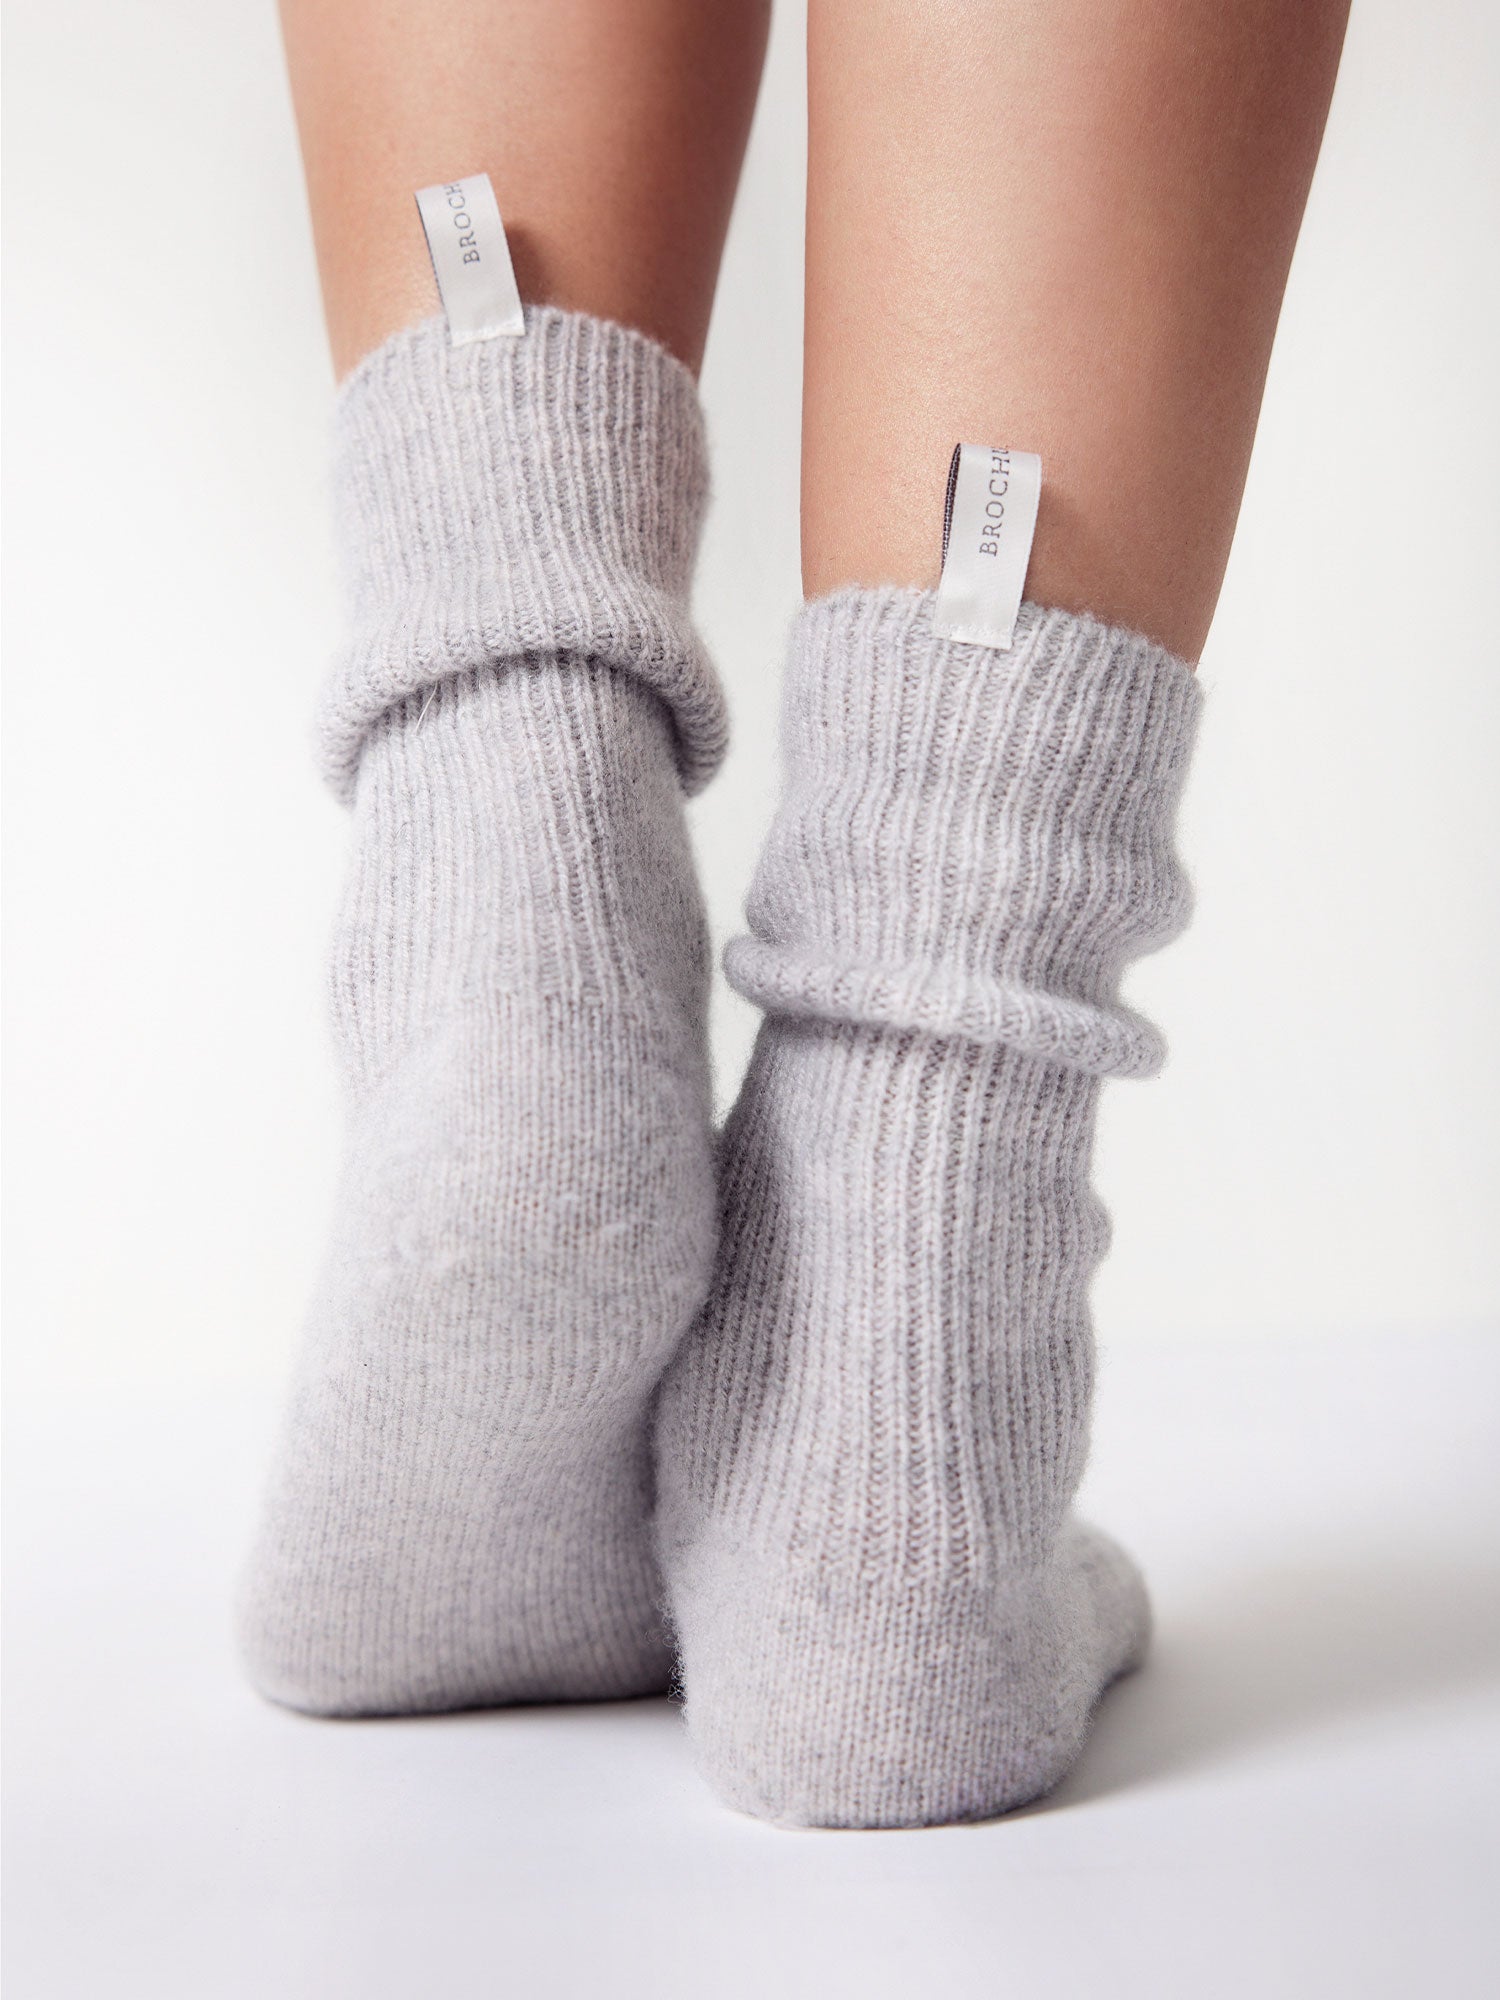 Cashmere-Blend Socks by Falke - Anthracite Mel 3089